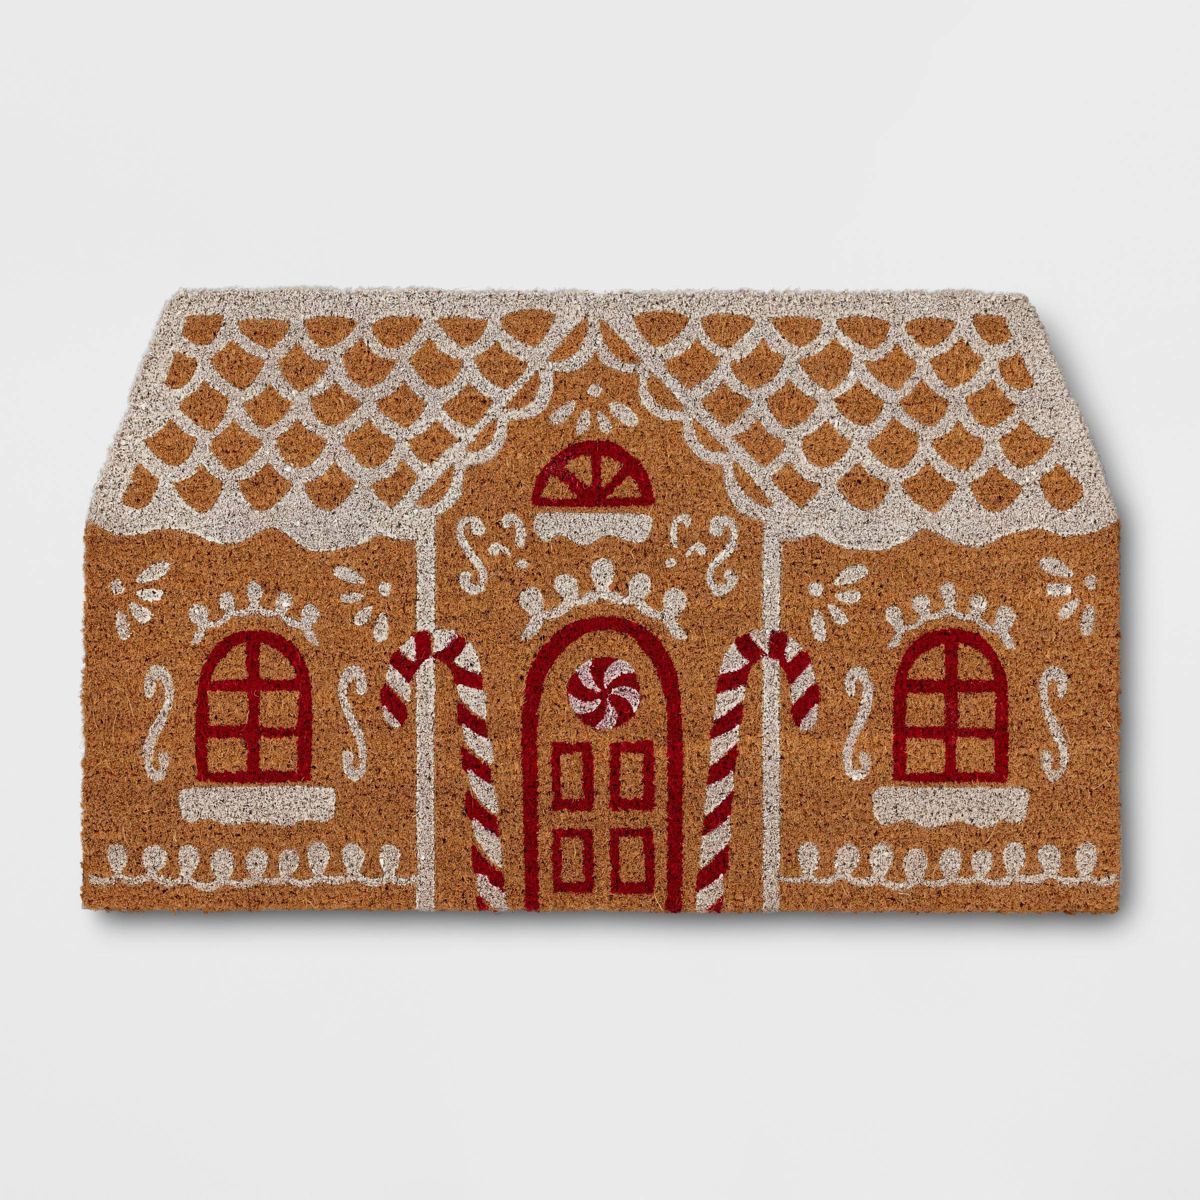 30"x18" Gingerbread House Christmas Novelty Coir Outdoor Mat Brown - Wondershop™ | Target